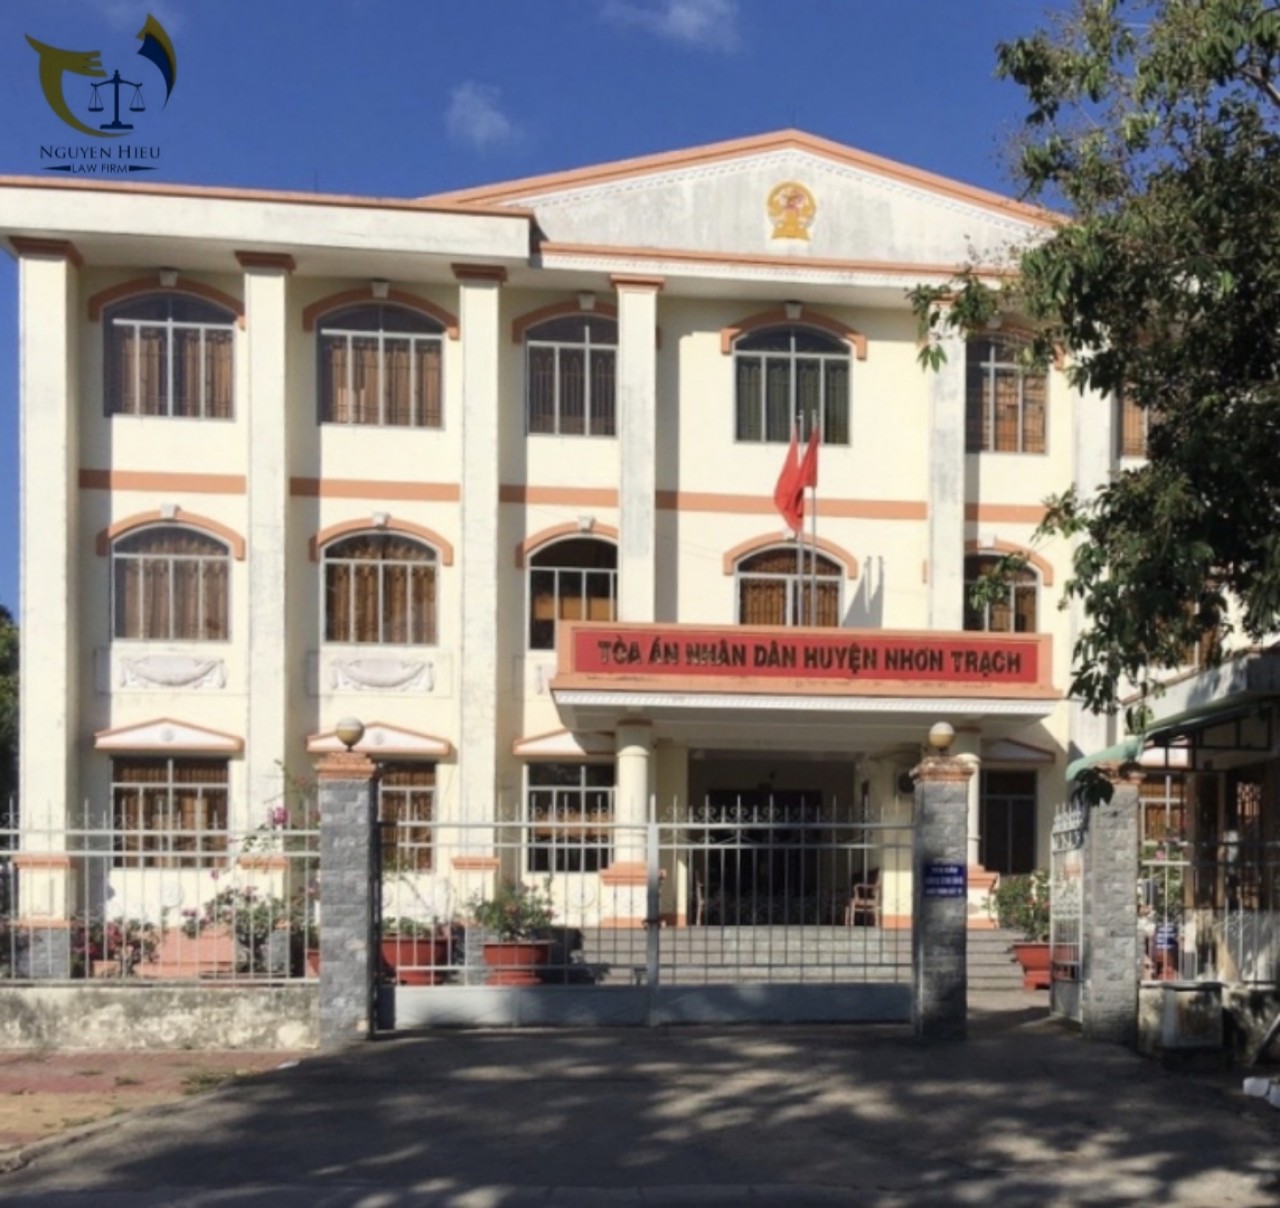 Tòa án nhân dân huyện Nhơn Trạch, tỉnh Đồng Nai